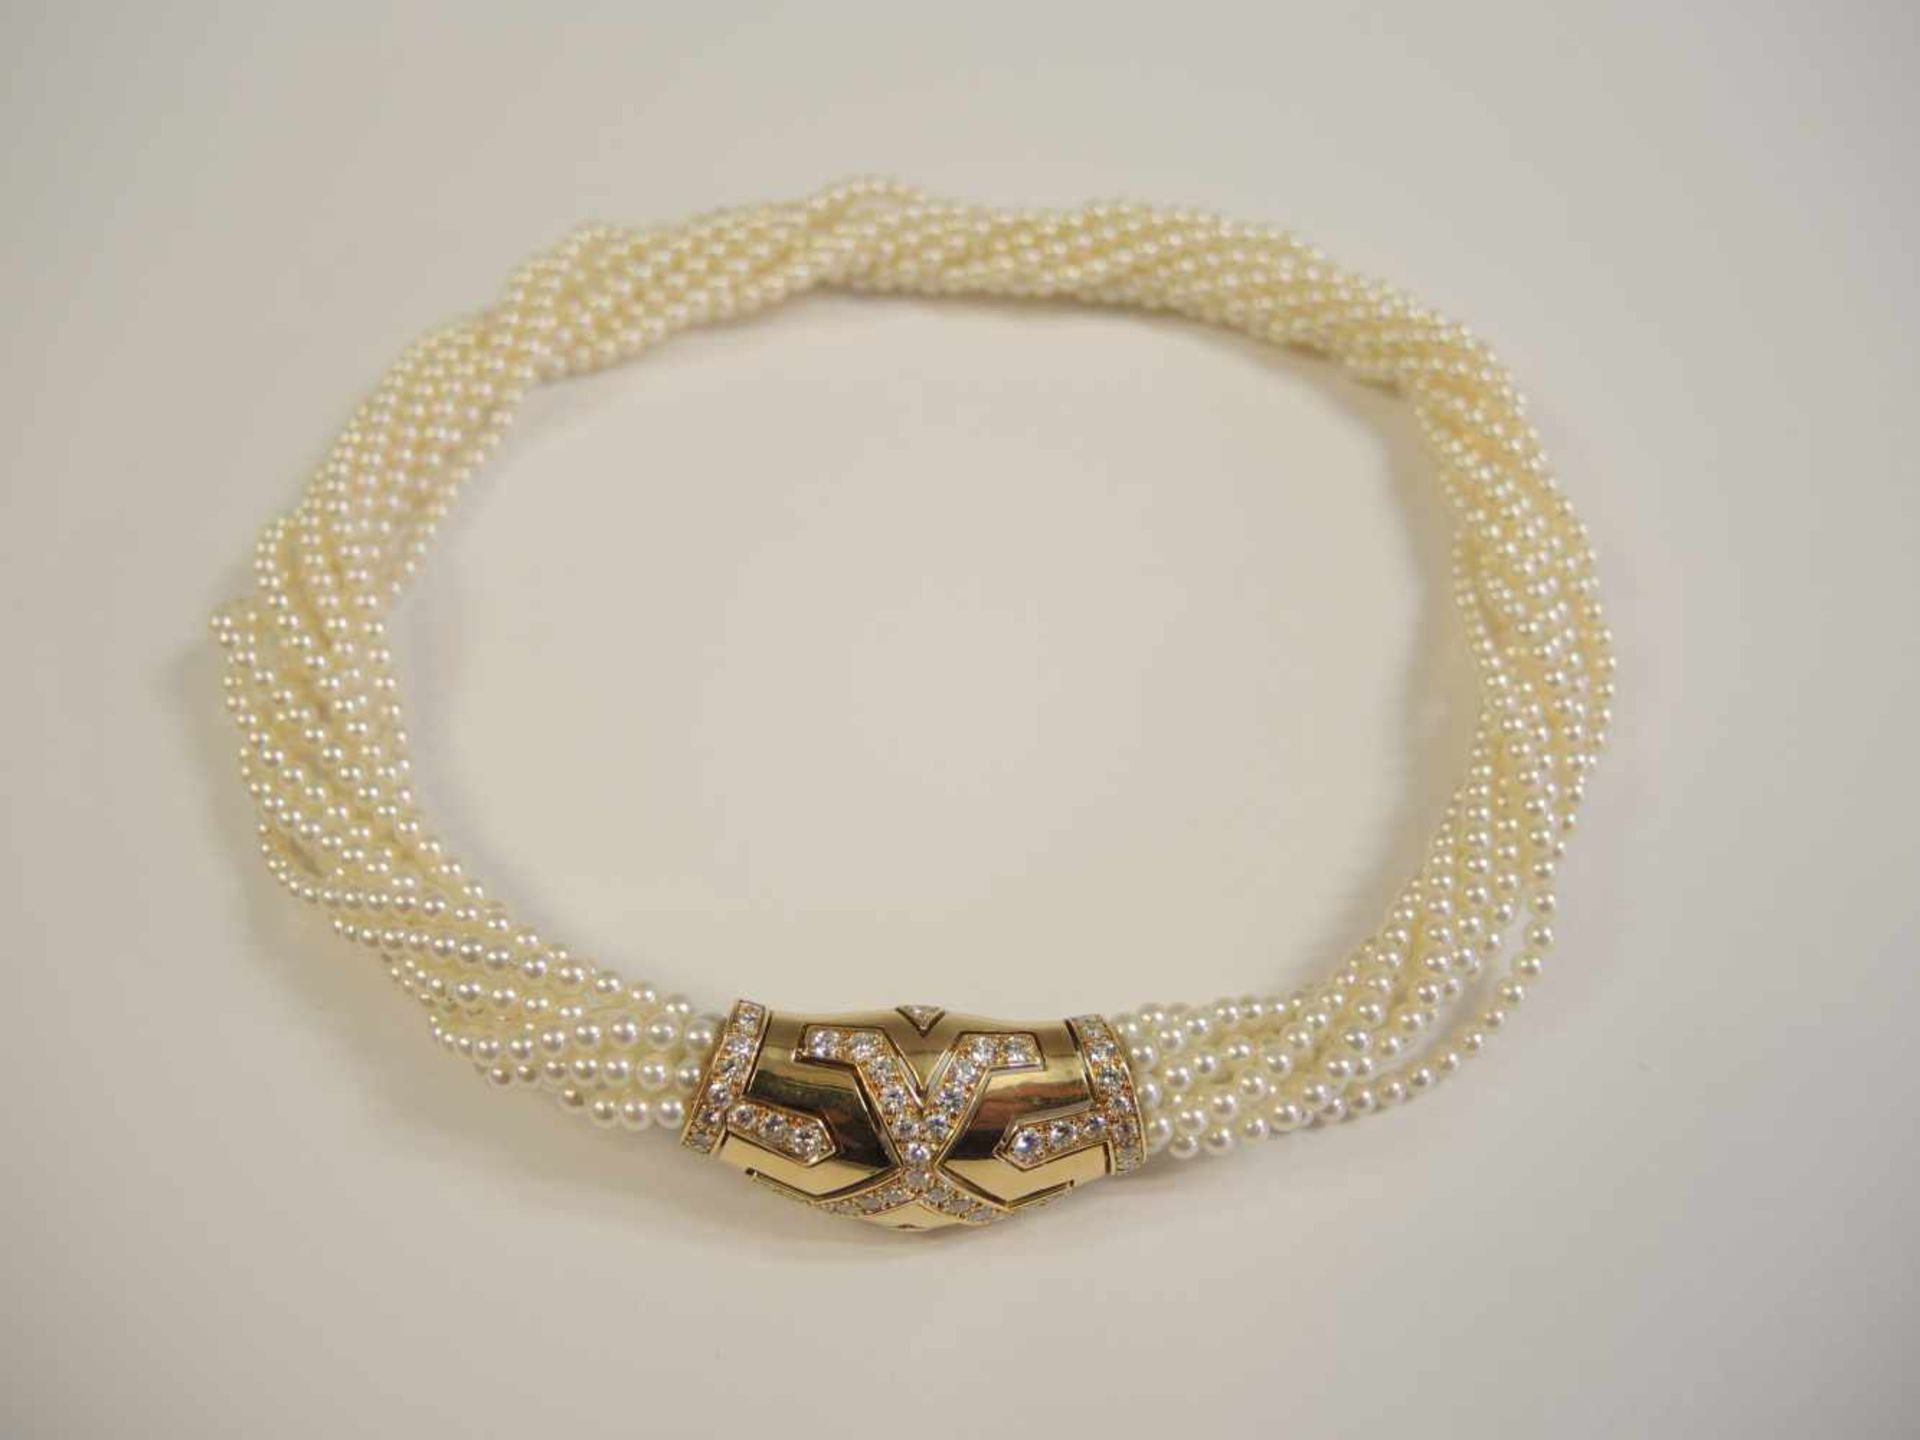 Cartier, PerlcollierMit Gelbgold-Diamant-Schloss, Diamantbesatz von ca. 2 ct. Feine Juweliersarbeit,